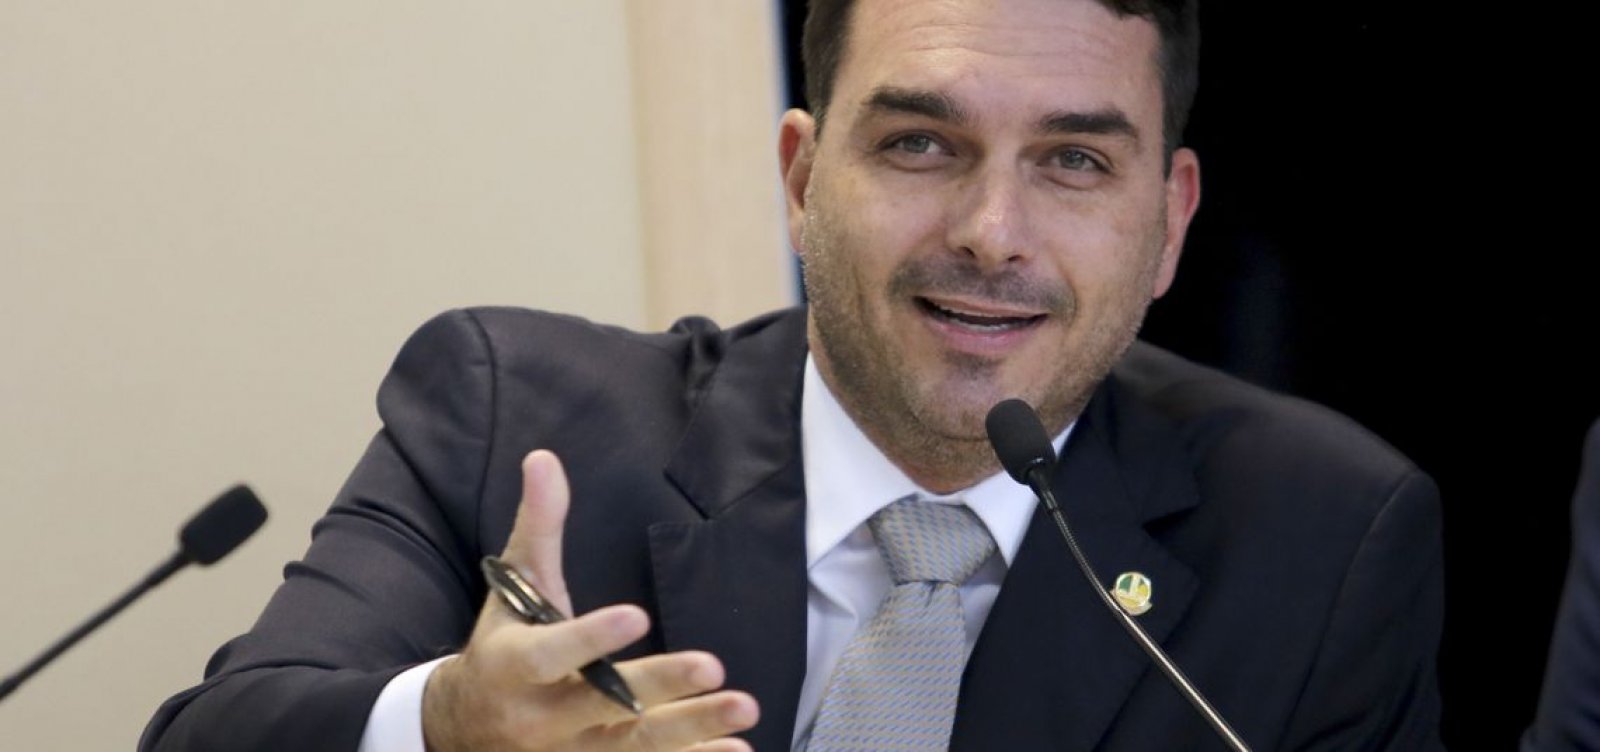 MP investiga possível lavagem de dinheiro em loja de chocolate de Flávio Bolsonaro